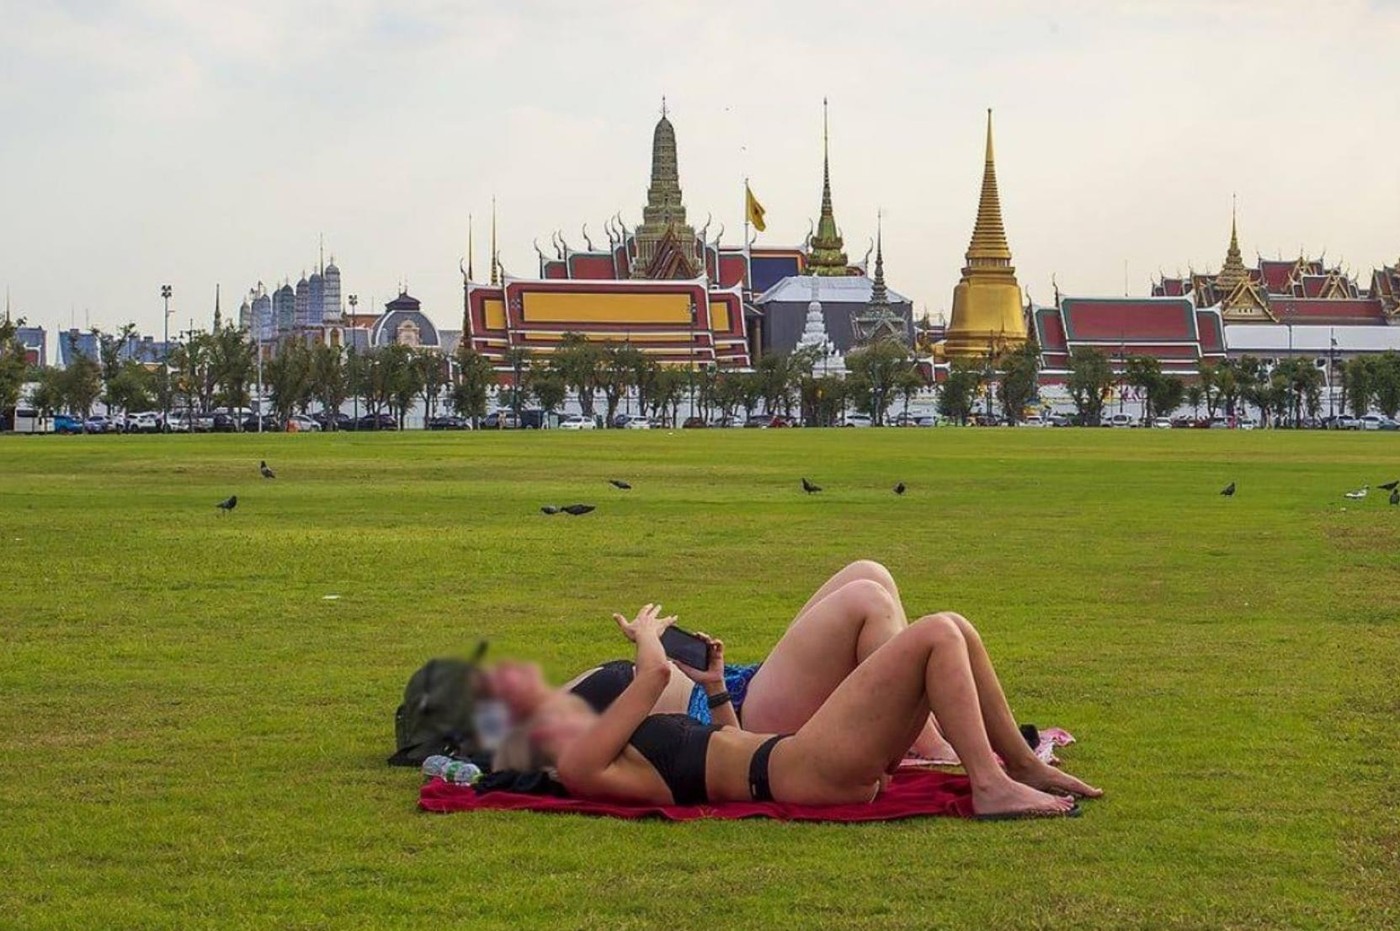 Туристки обнажились в парке для церемоний кремации королей Таиланда, вызвав взрыв в соцсетях